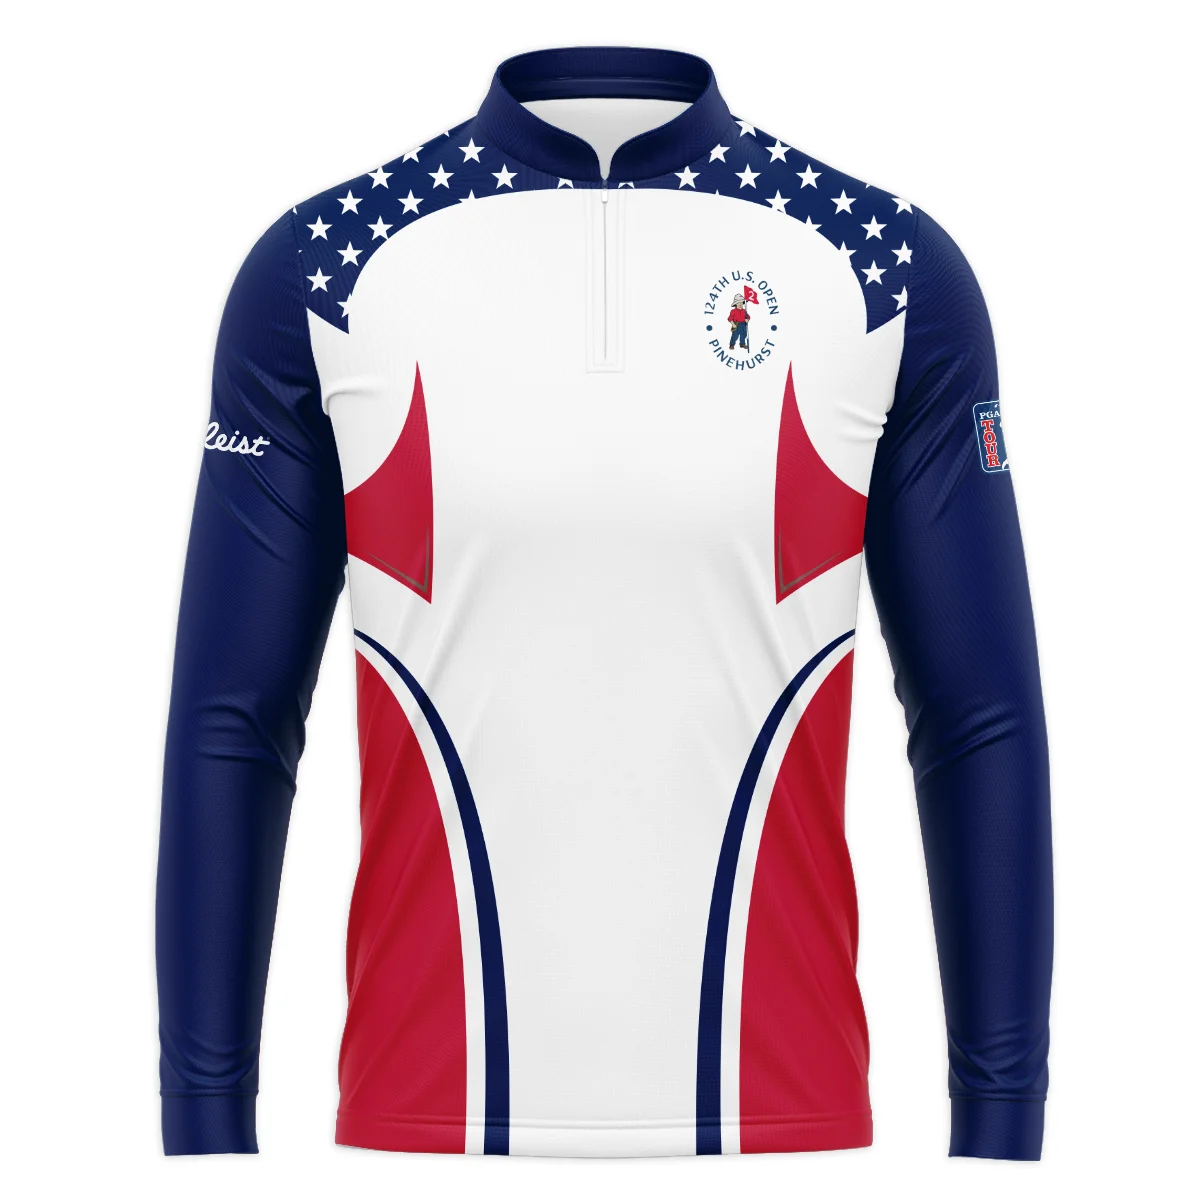 124th U.S. Open Pinehurst Titleist Stars White Dark Blue Red Line Vneck Polo Shirt Style Classic Polo Shirt For Men